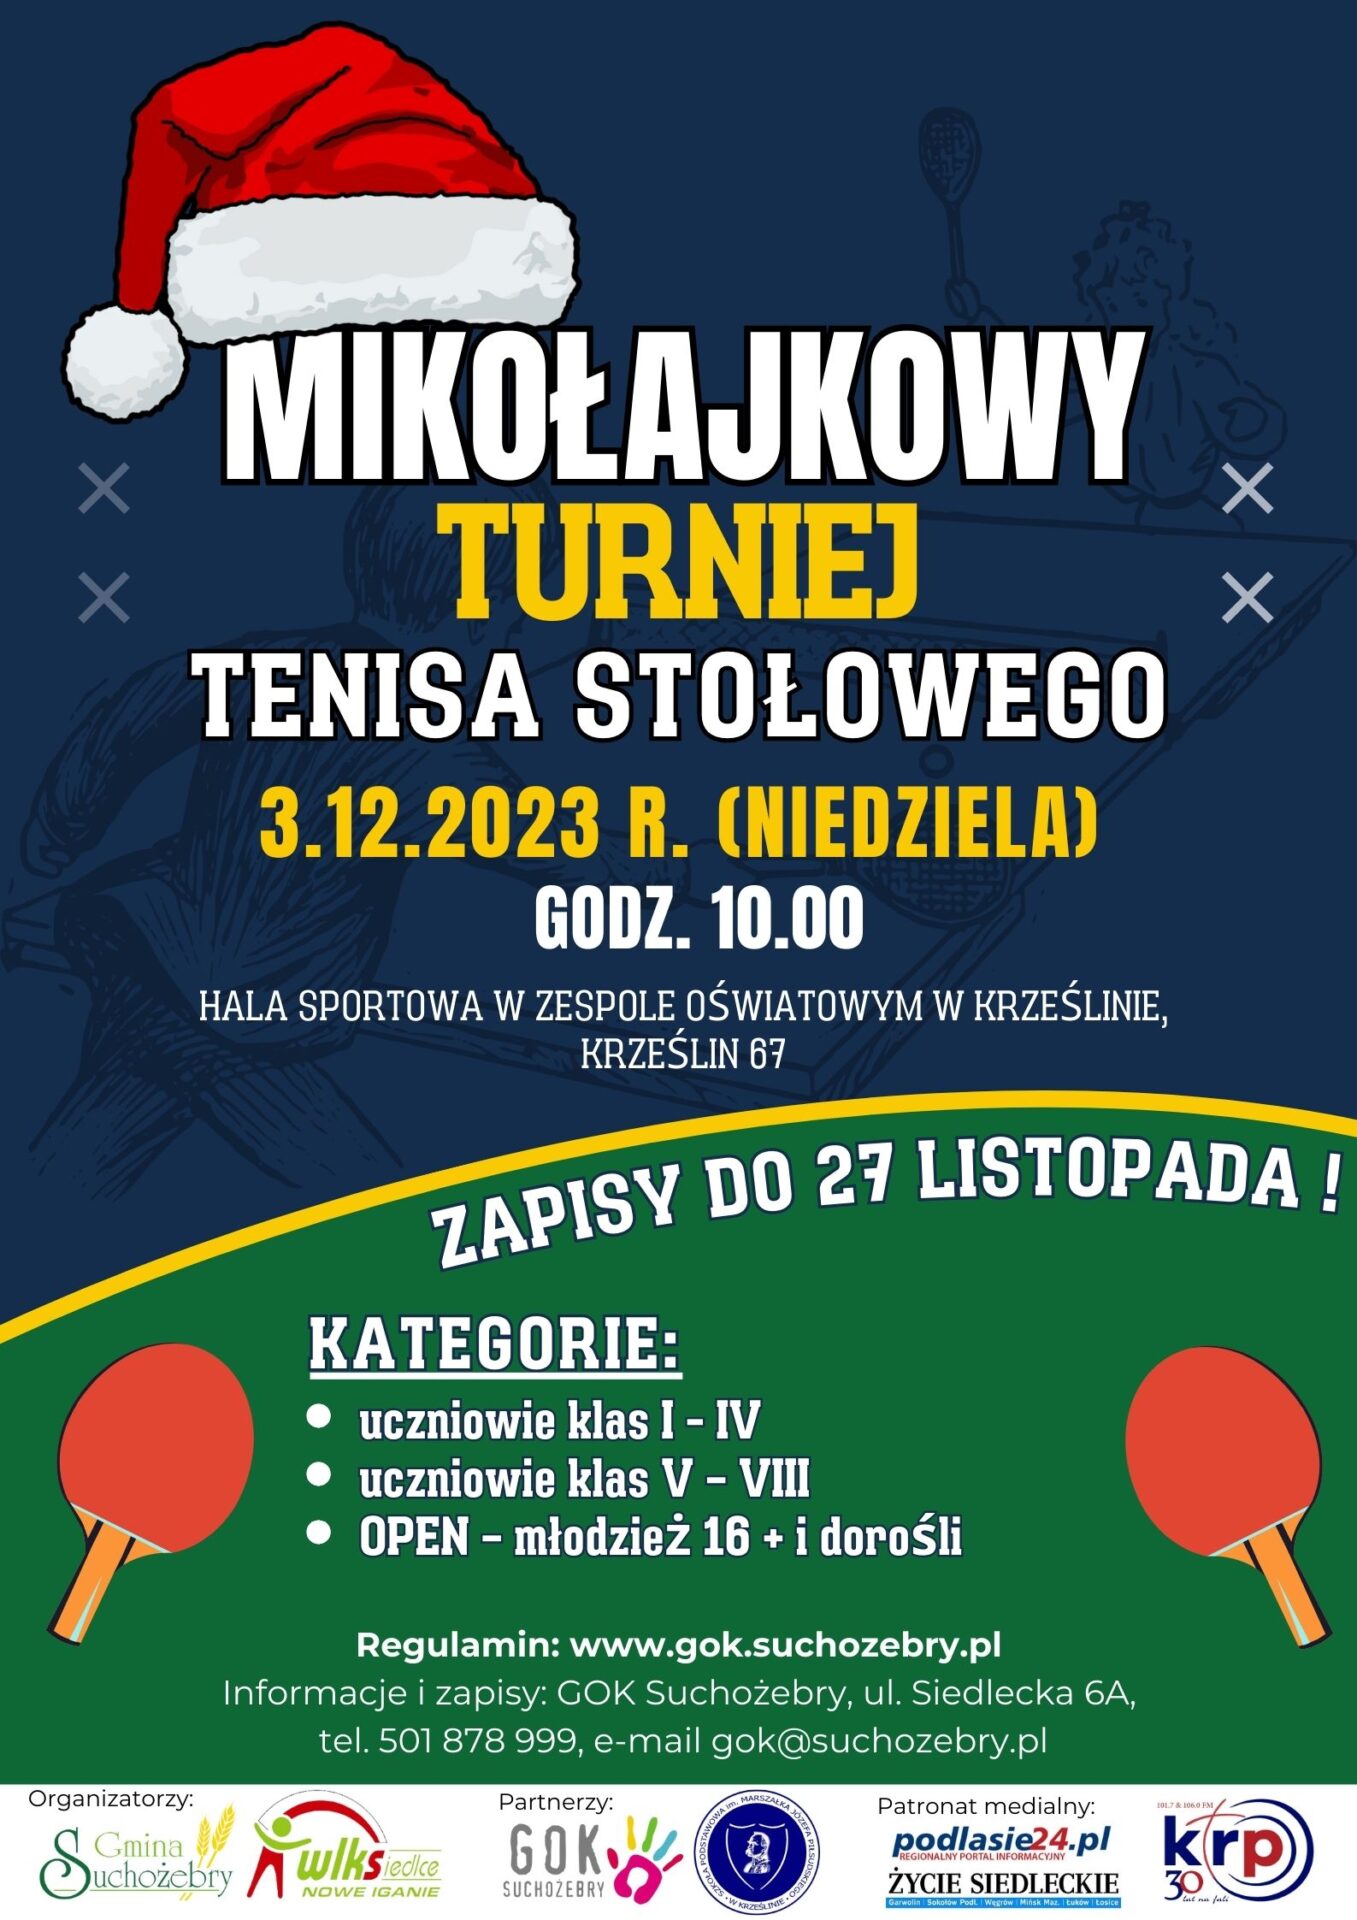 Mikołajkowy Turniej Tenisa Stołowego - plakat na granatowo-zielonym tle. W dole dwie czerwone paletki do tenisa stołowego.